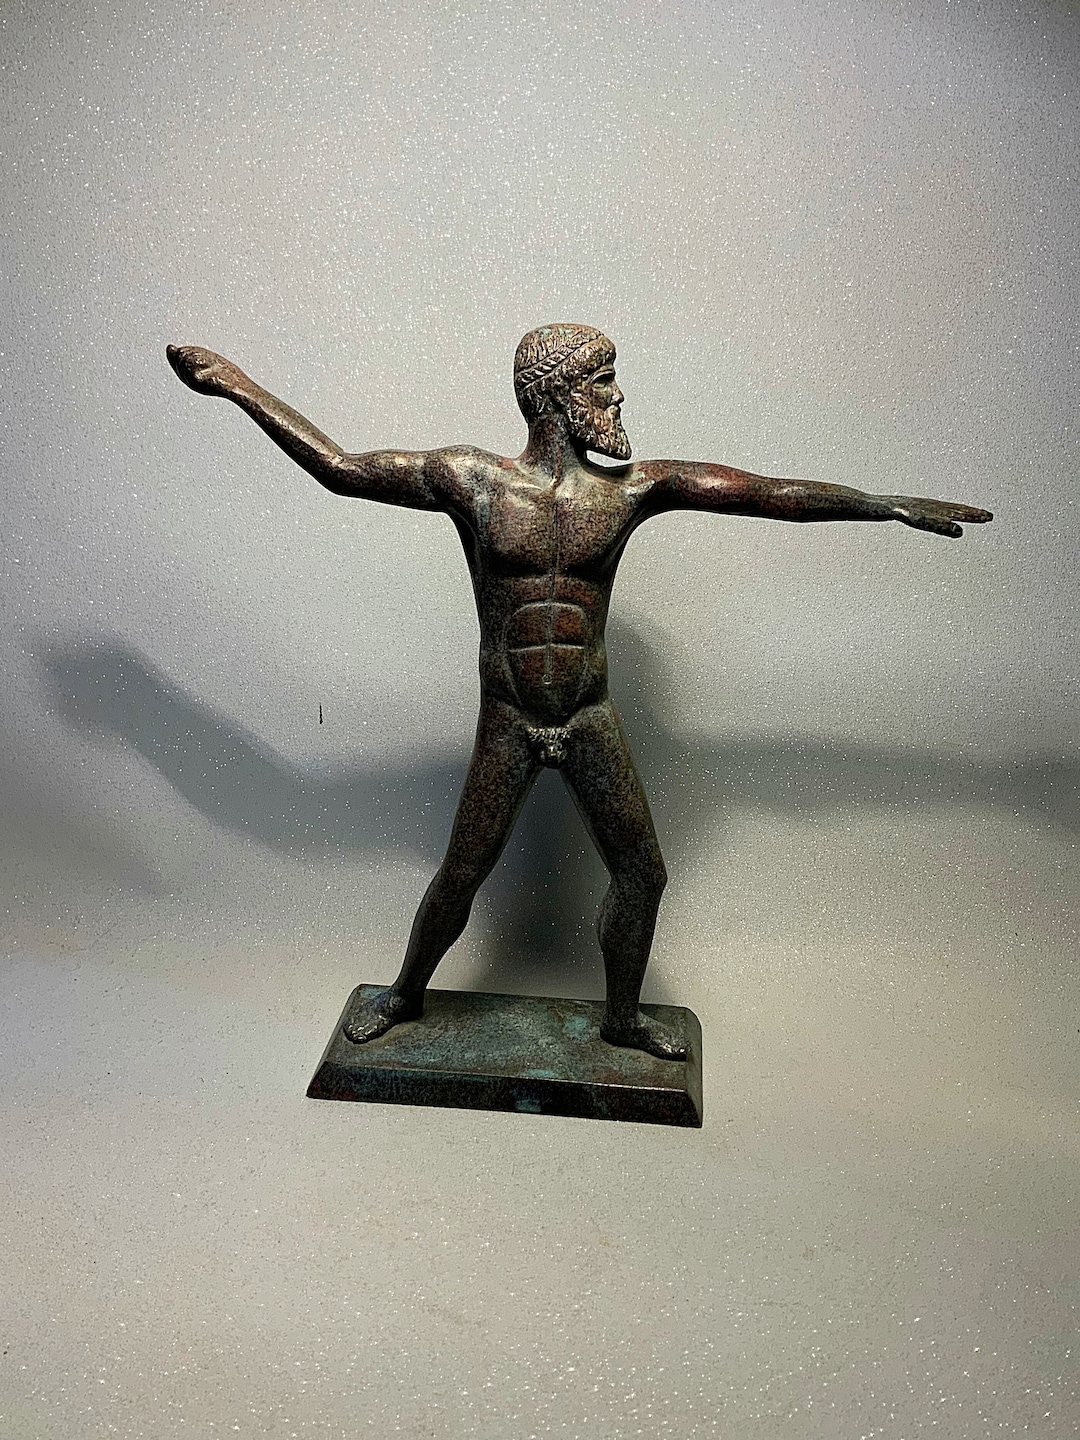 An Outstanding Bronze zeus Statue or Figurine - Etsy